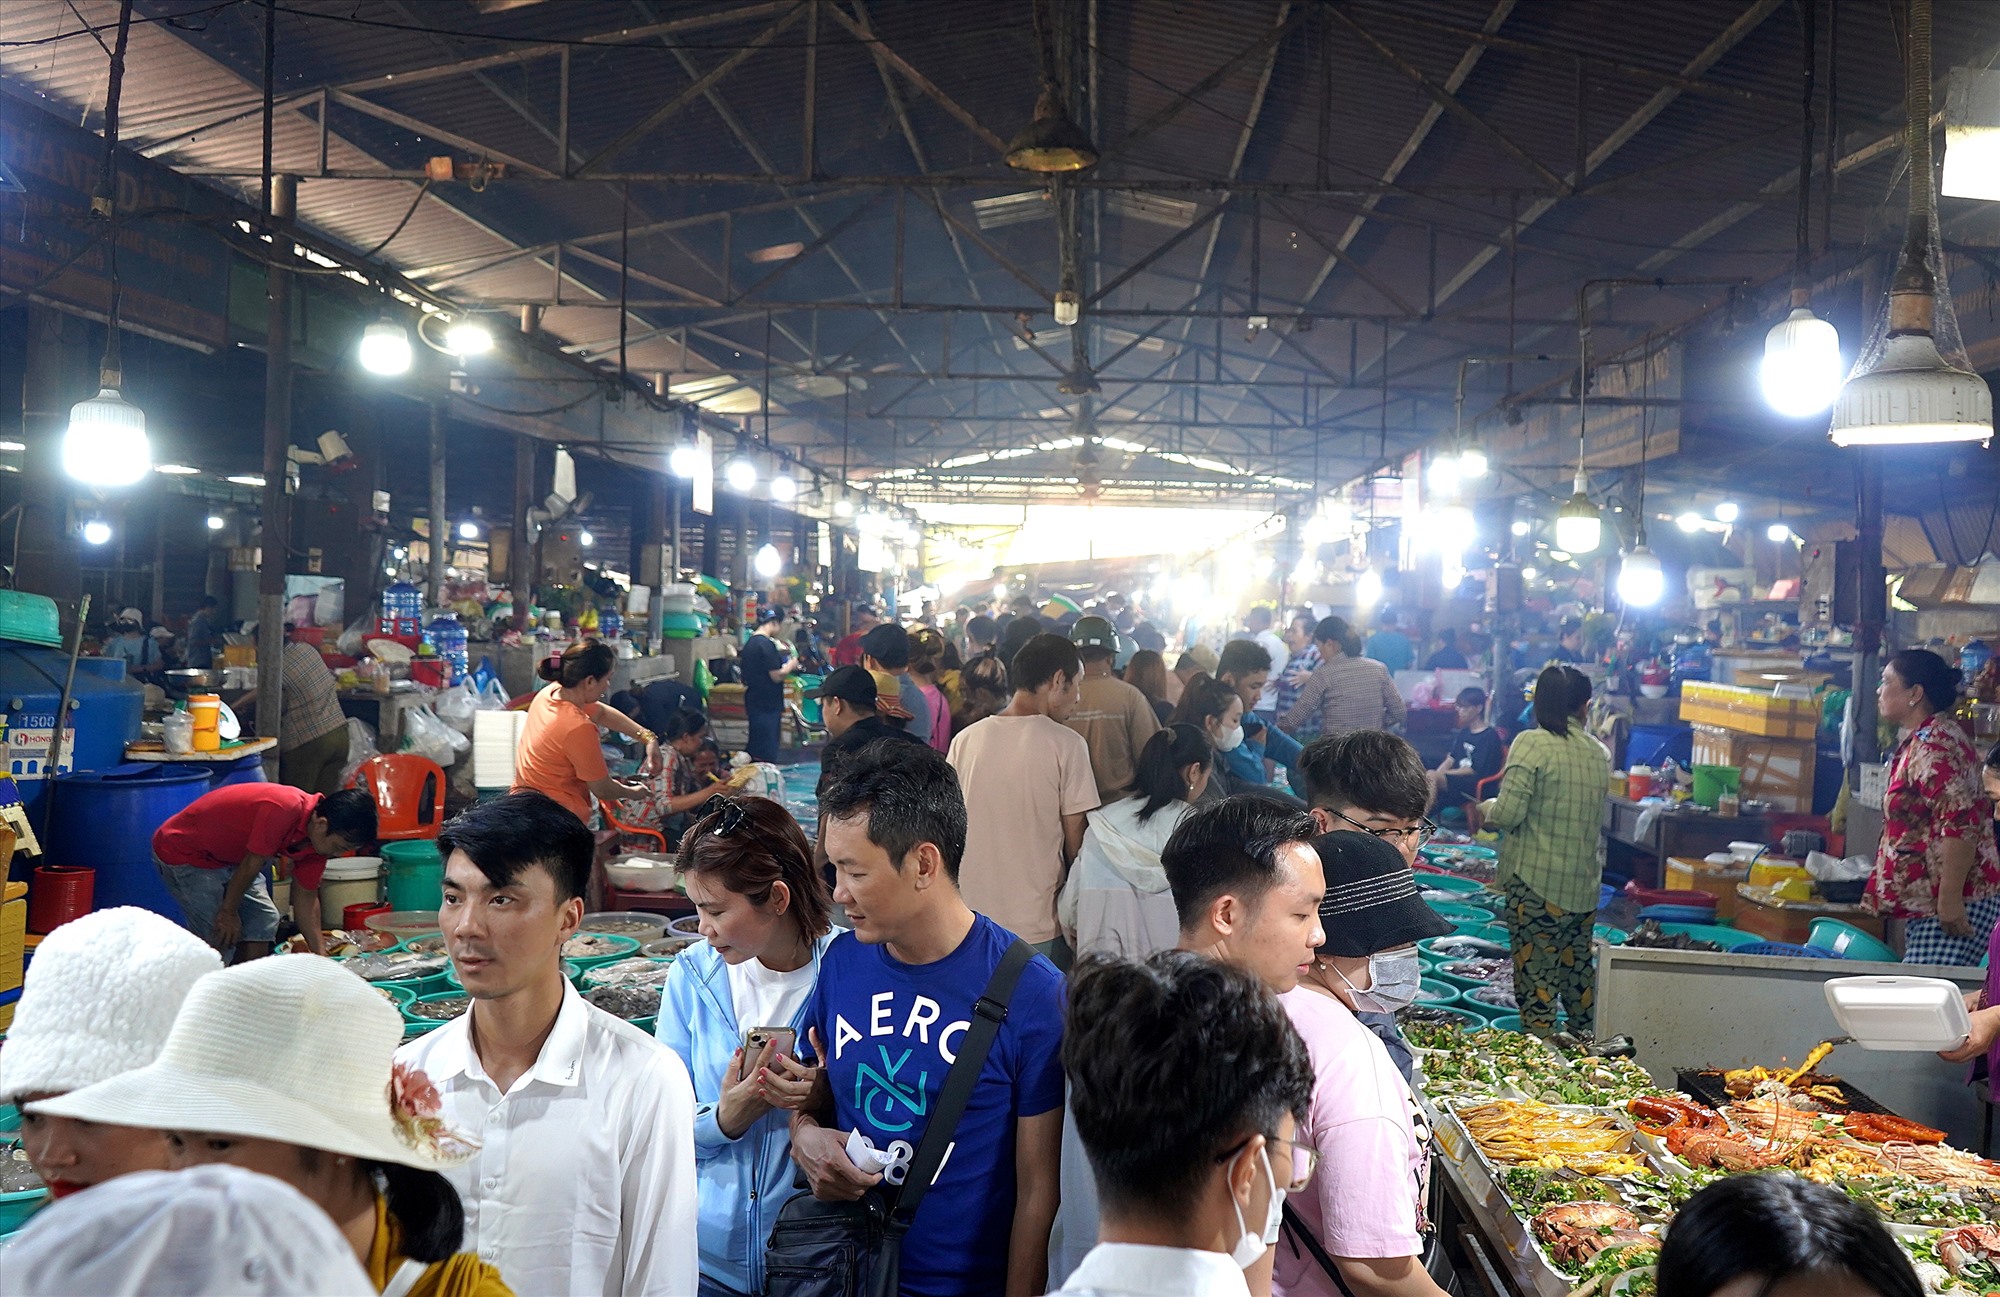 Tại chợ Hàng Dương, một điểm bán hải sản nổi tiếng của Cần Giờ, TPHCM, trong 2 ngày 2 và 3.9, đông đúc du khách đến đây mua hải sản.